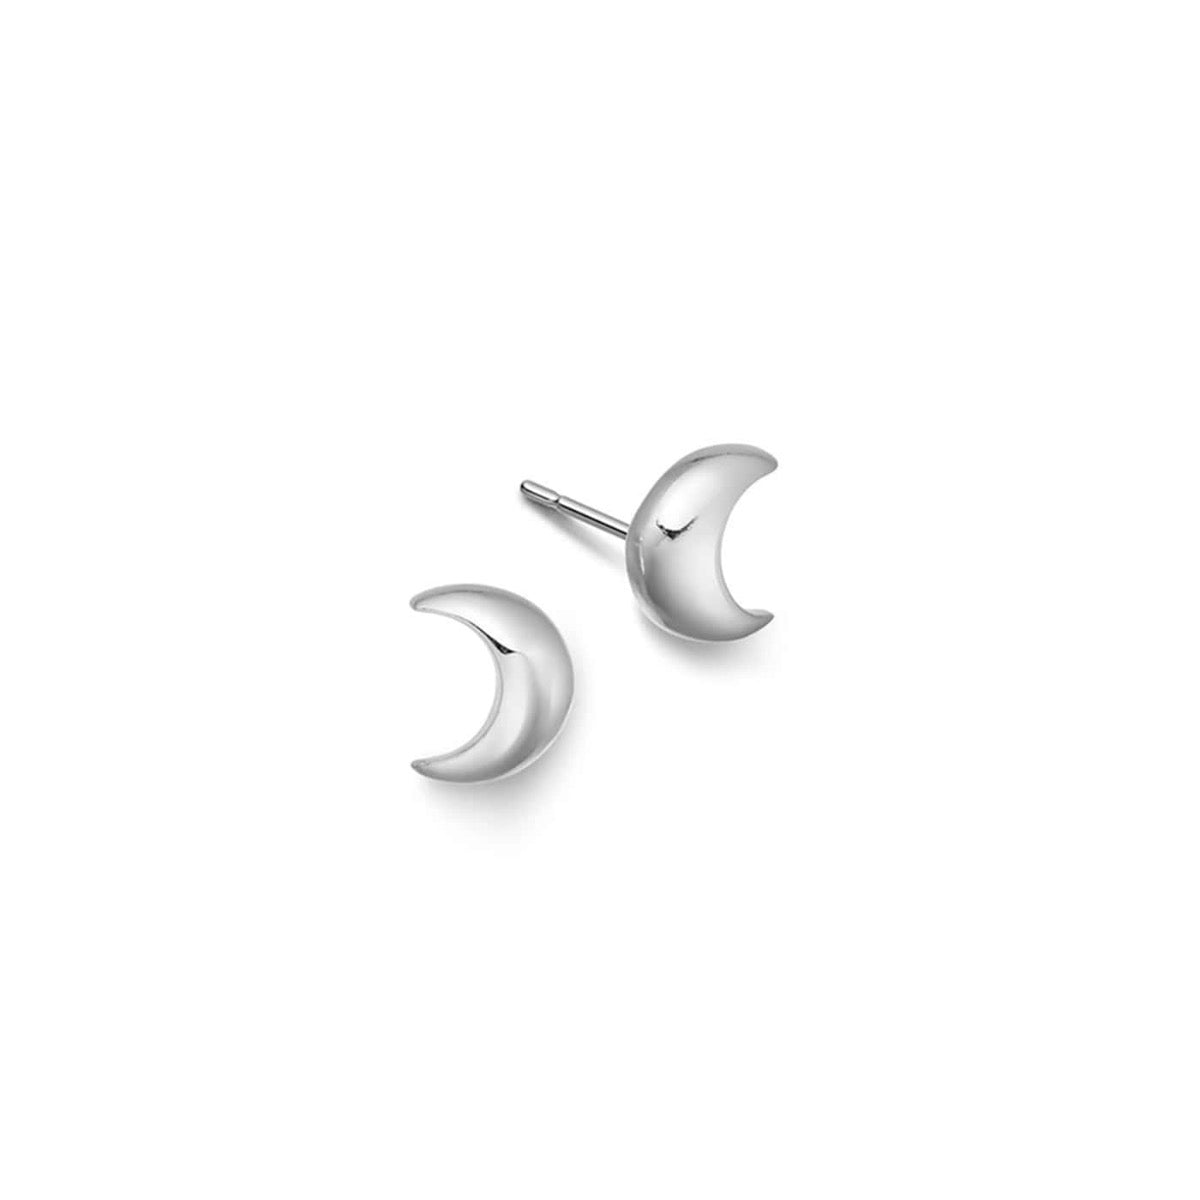 Silver moon stud earrings